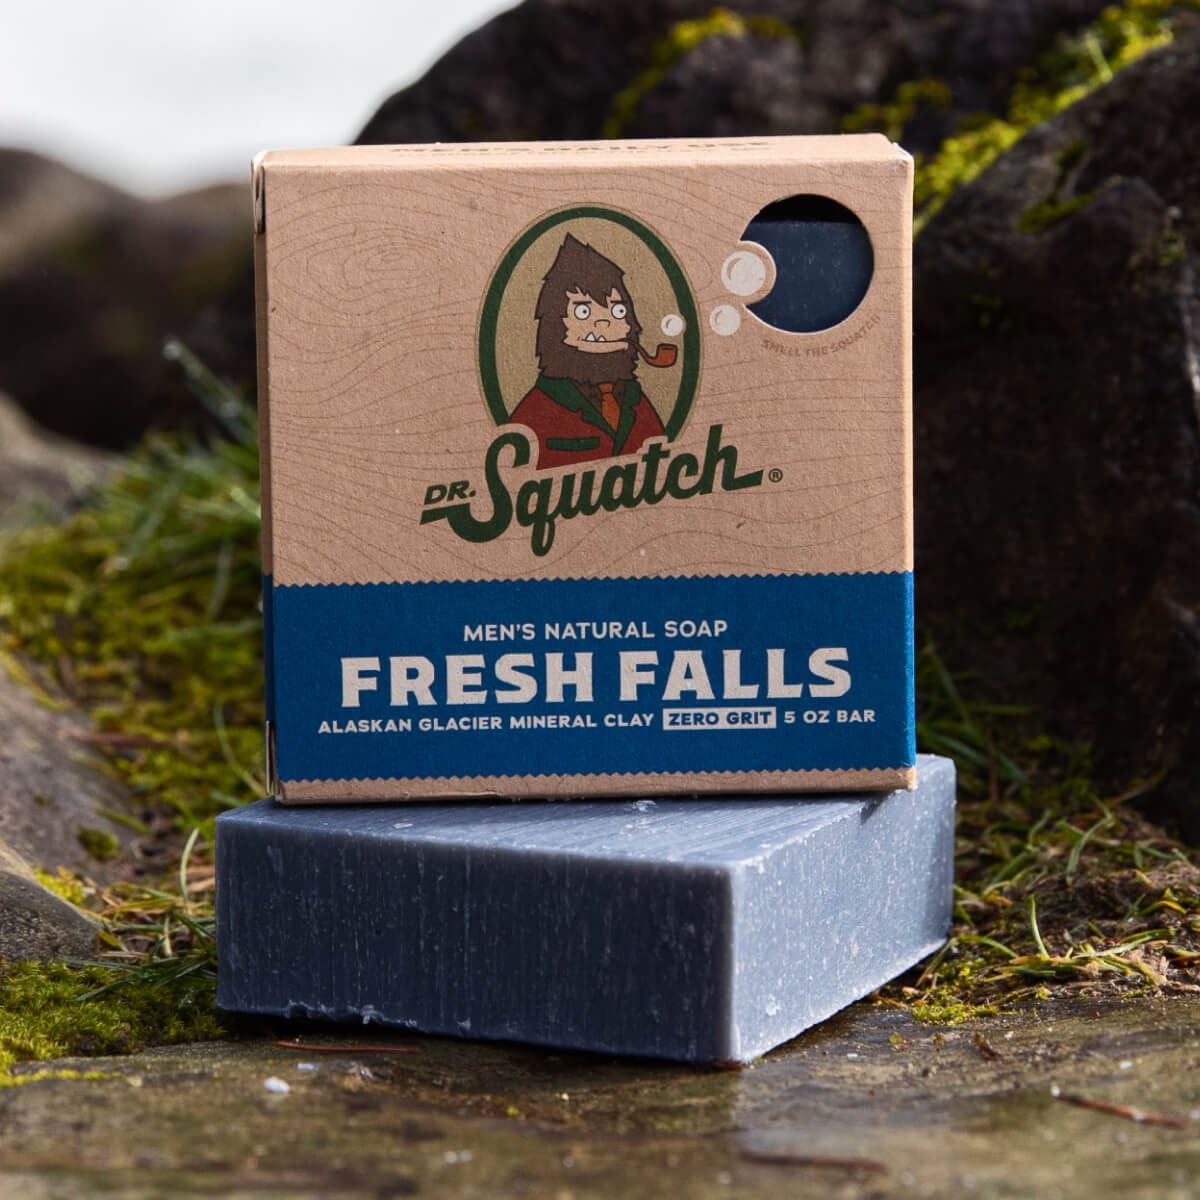 Dr. Squatch Men's Natural Soap Fresh Falls 5oz Bar – Spa